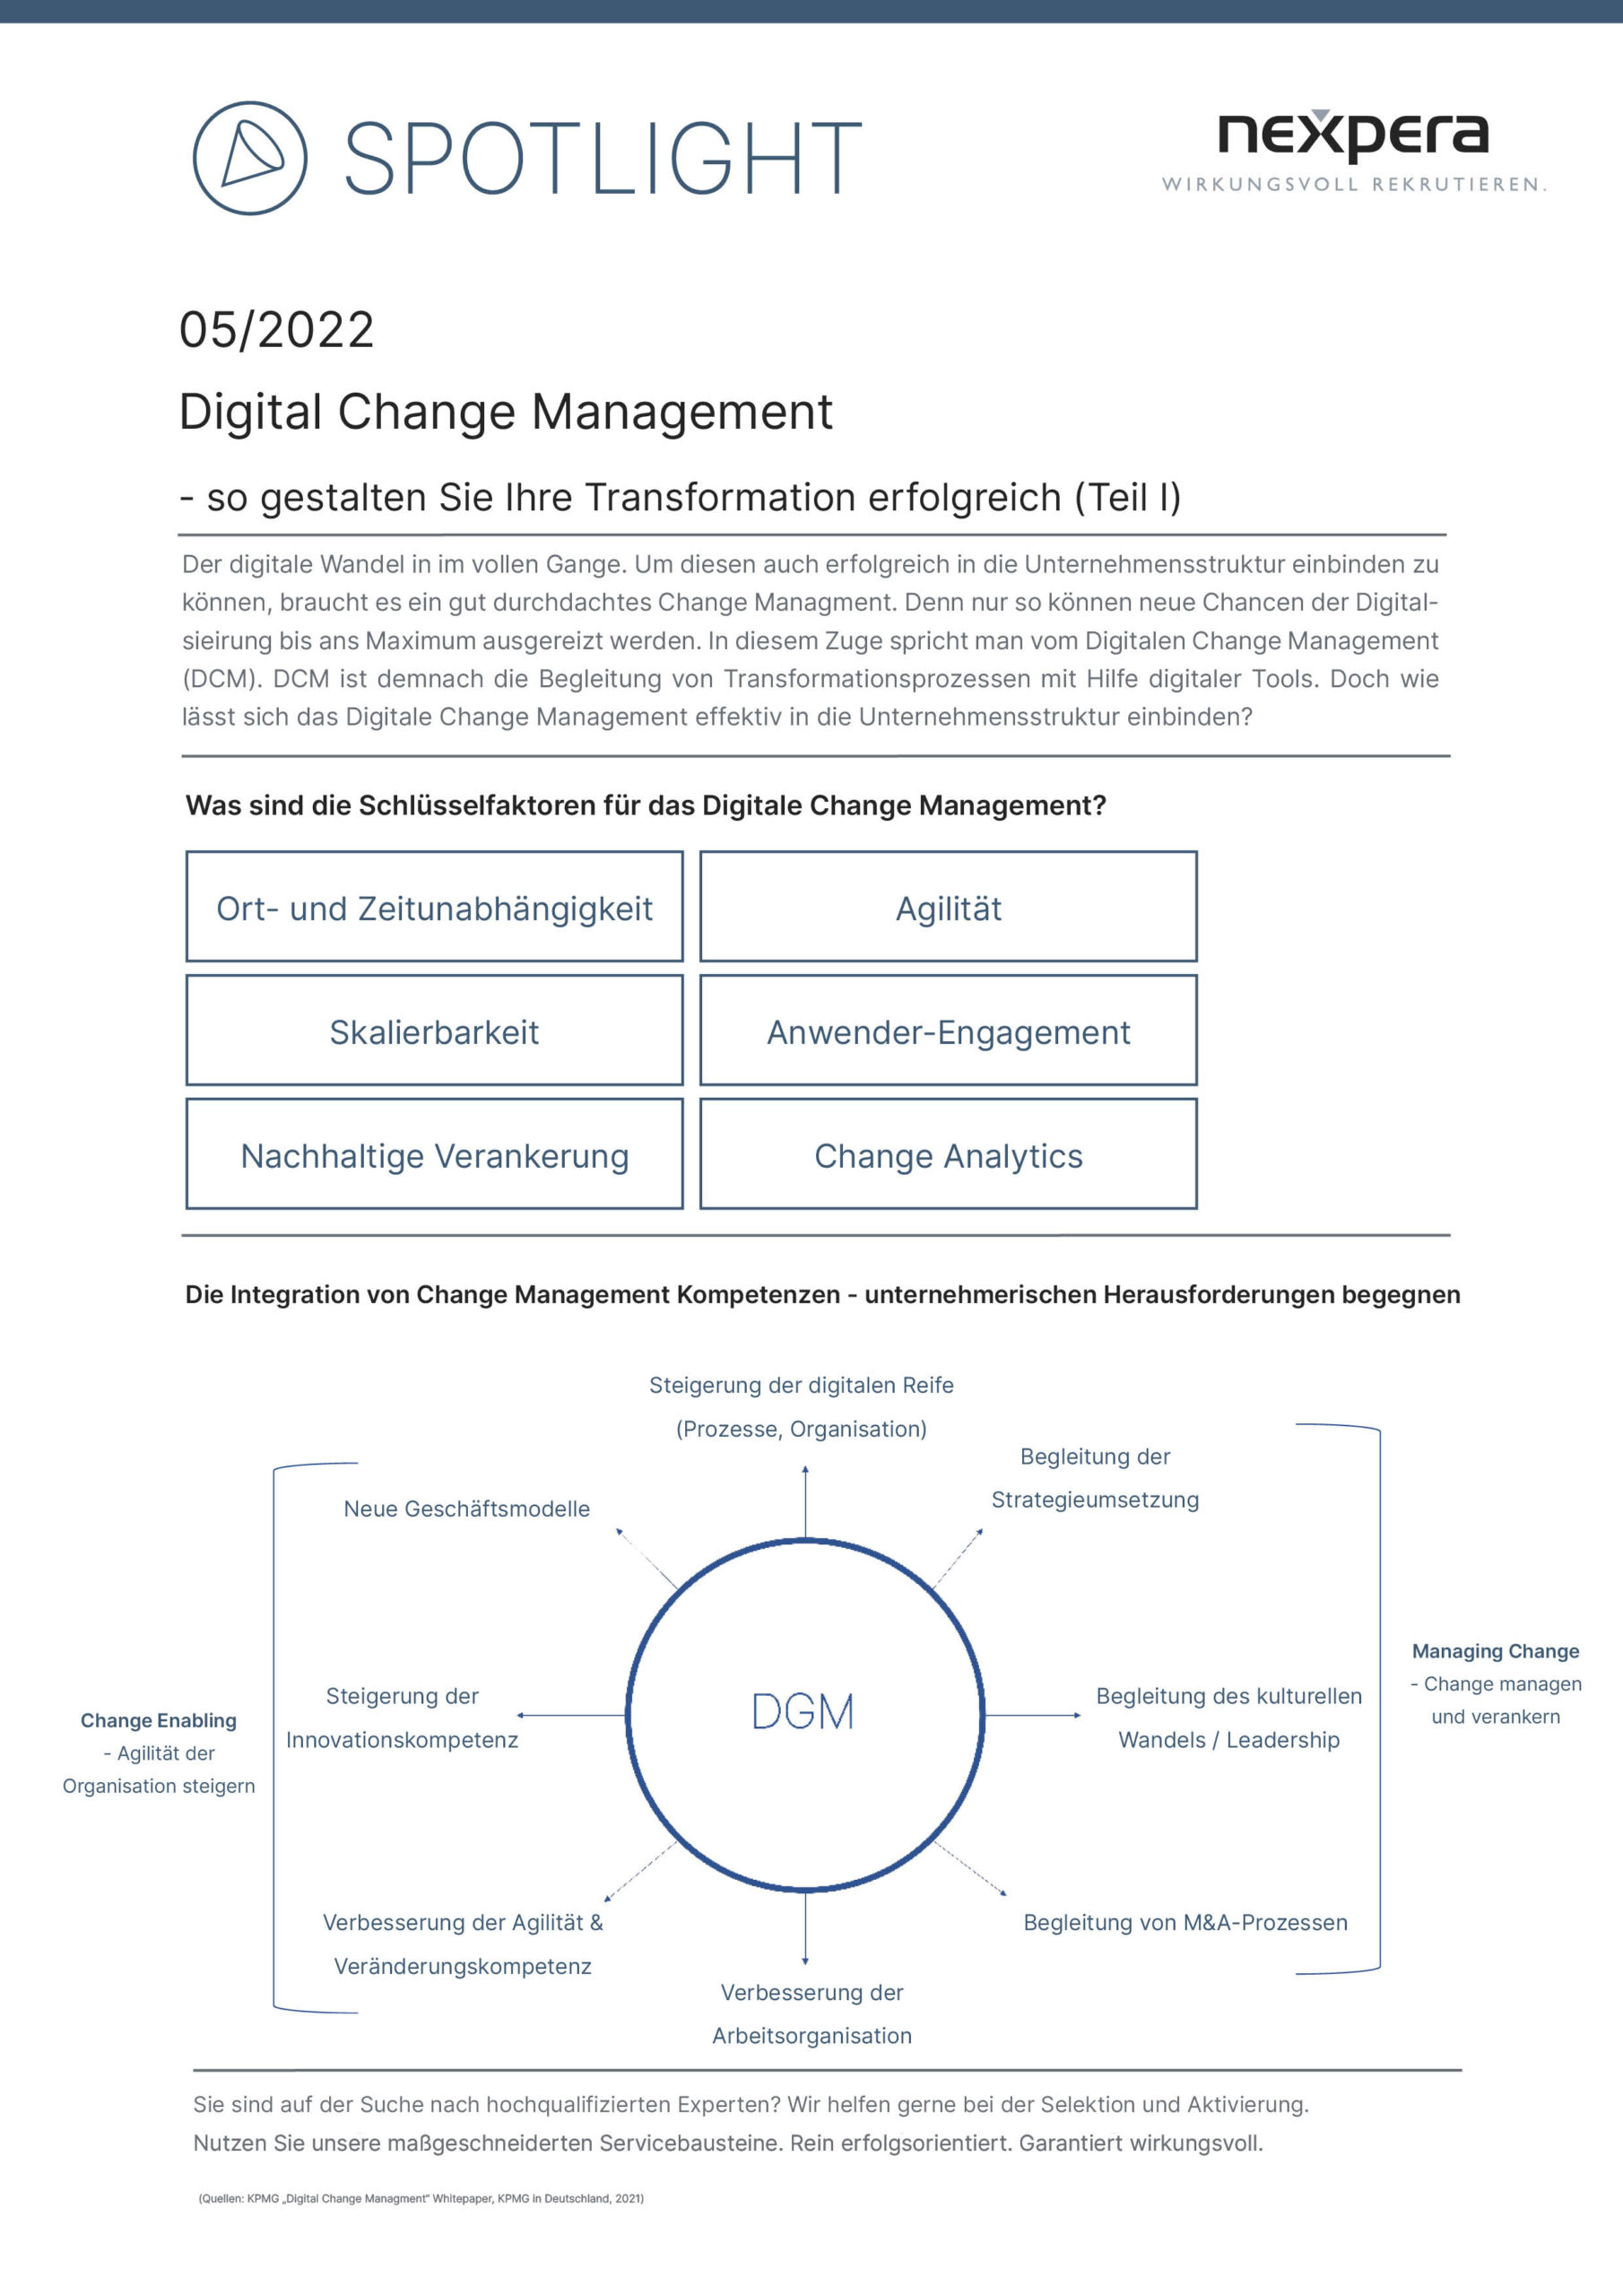 Spotlight Digital Change Management Teil I